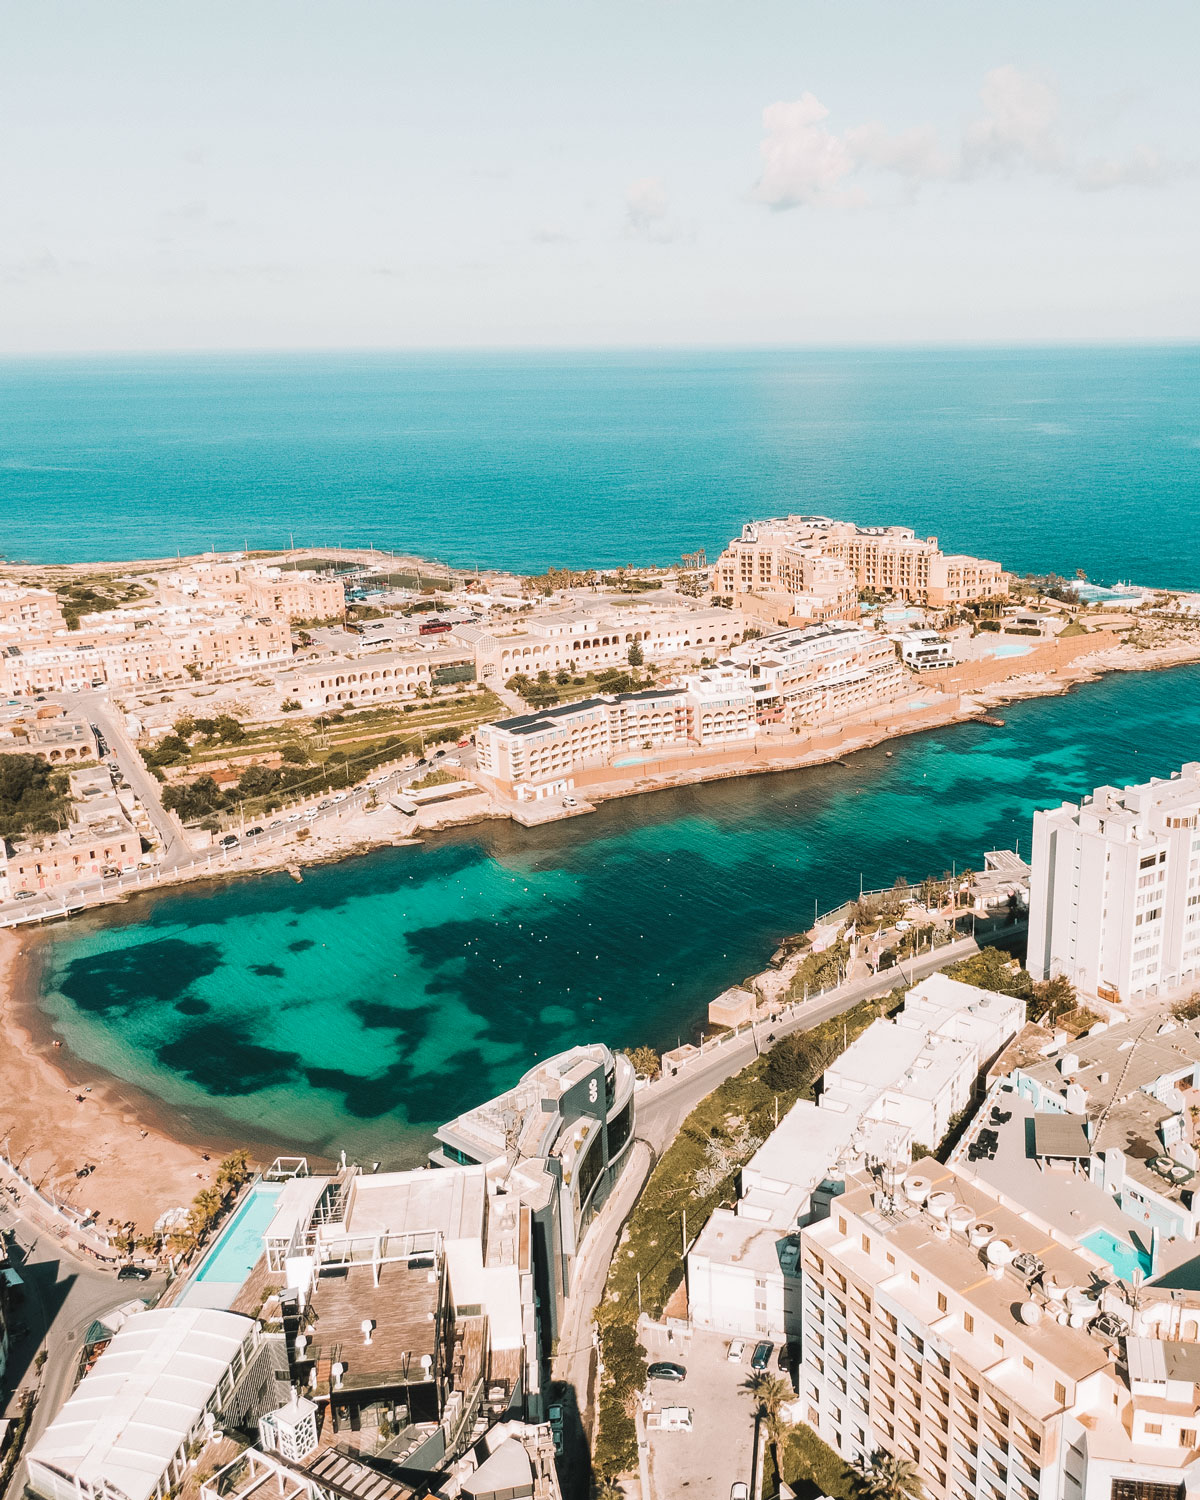 Vista aérea de St. Julian's, la mejor zona para hospedarse en Malta, mostrando las aguas turquesas claras de la bahía, la arquitectura mediterránea circundante y el paisaje urbano.